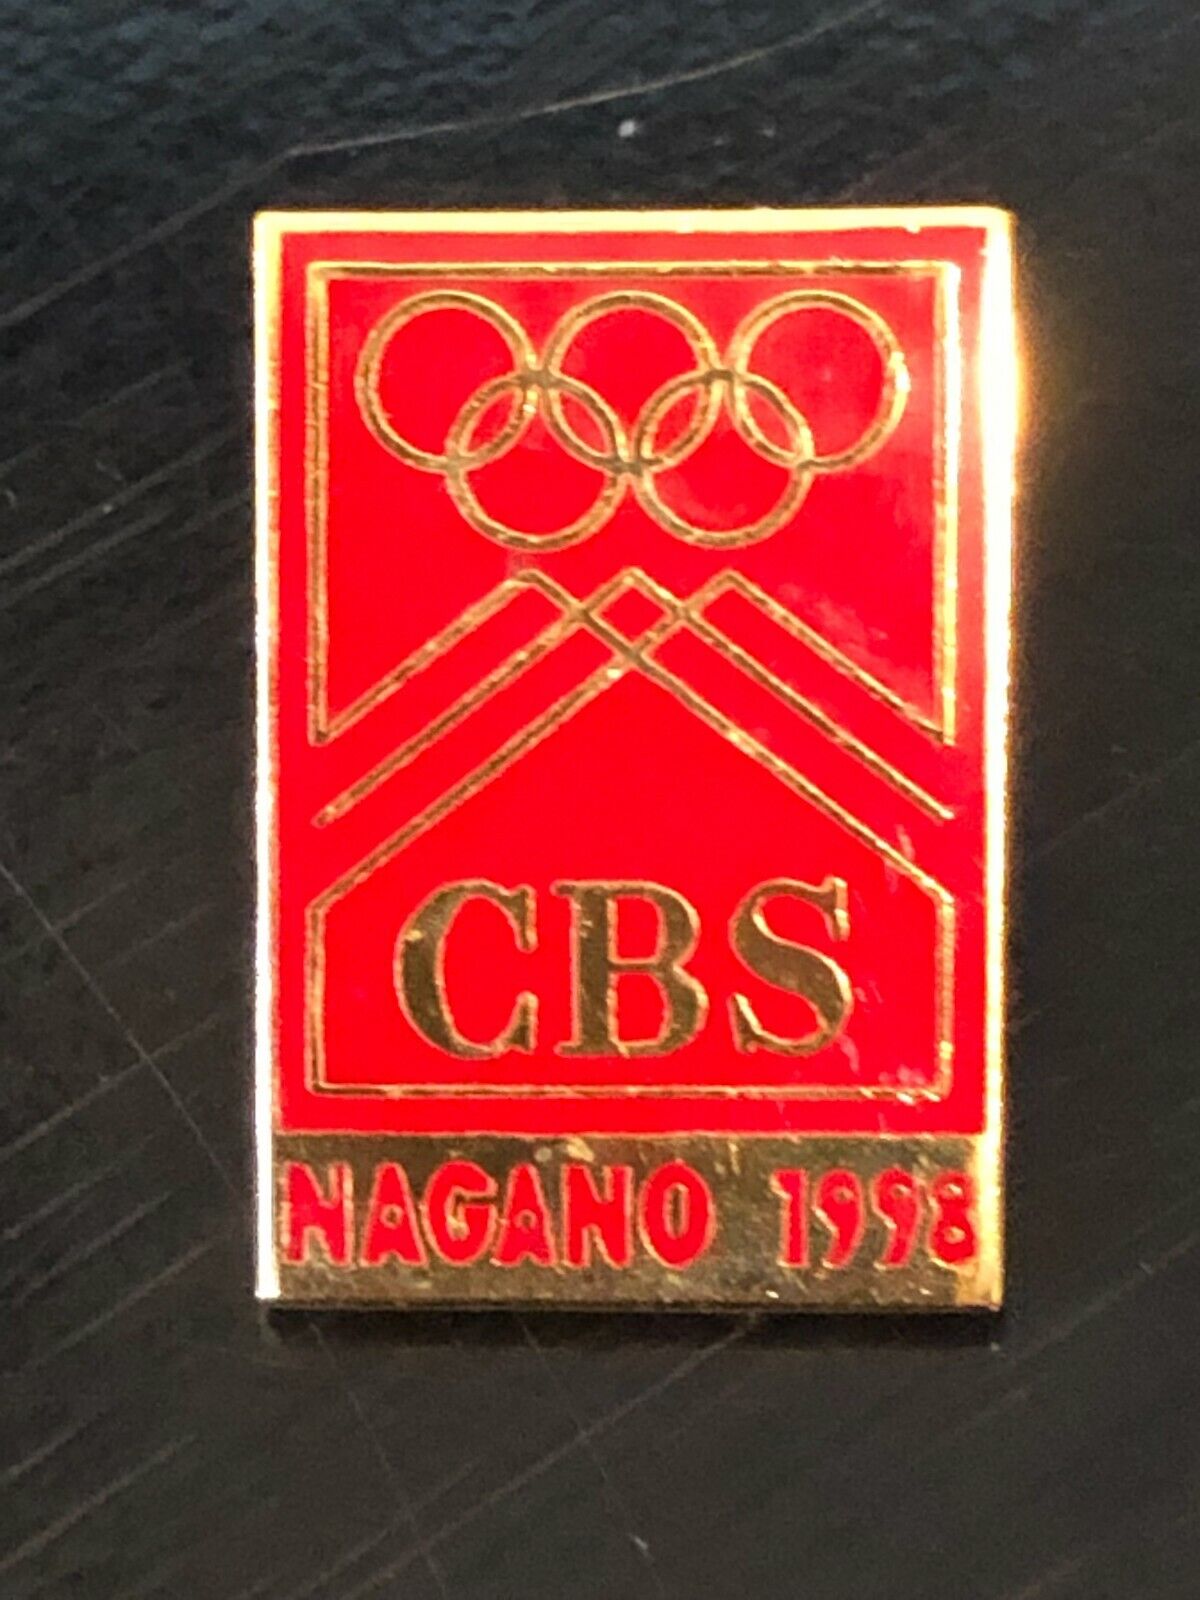 Vintage Collectible Olympics CBS Nagano 98 Metal Pin Back Lapel Pin Hat Pin